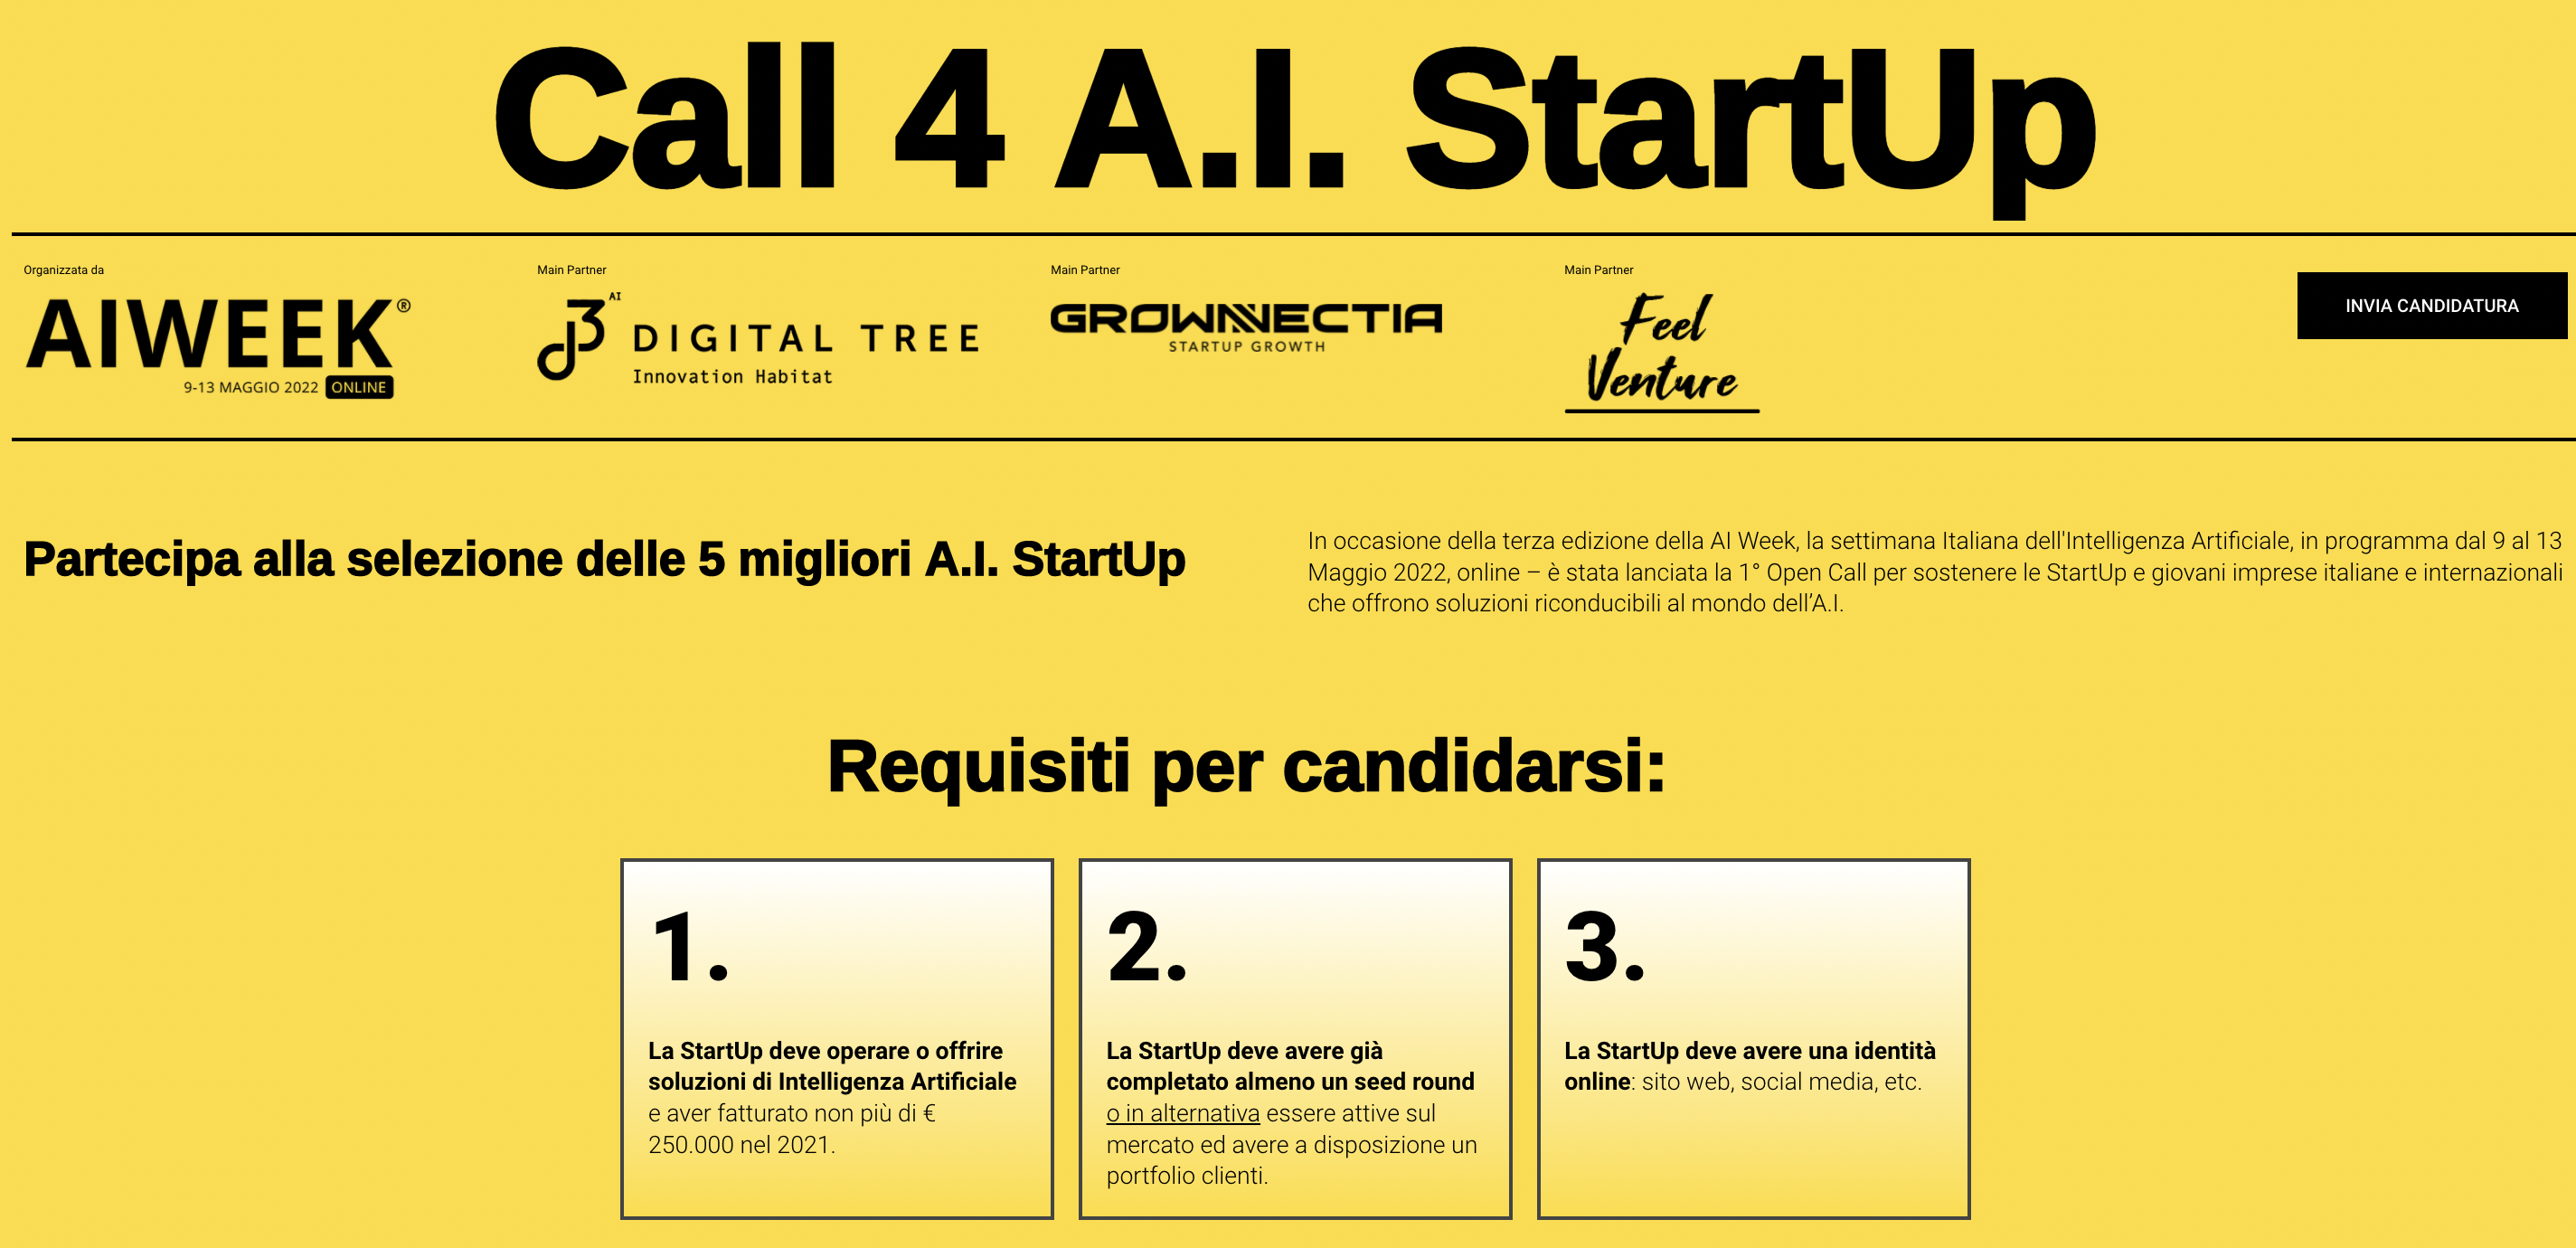 3 вимоги для подання заявки на «Call 4 AI Startup» у рамках «Тижня AI» у 2022 році